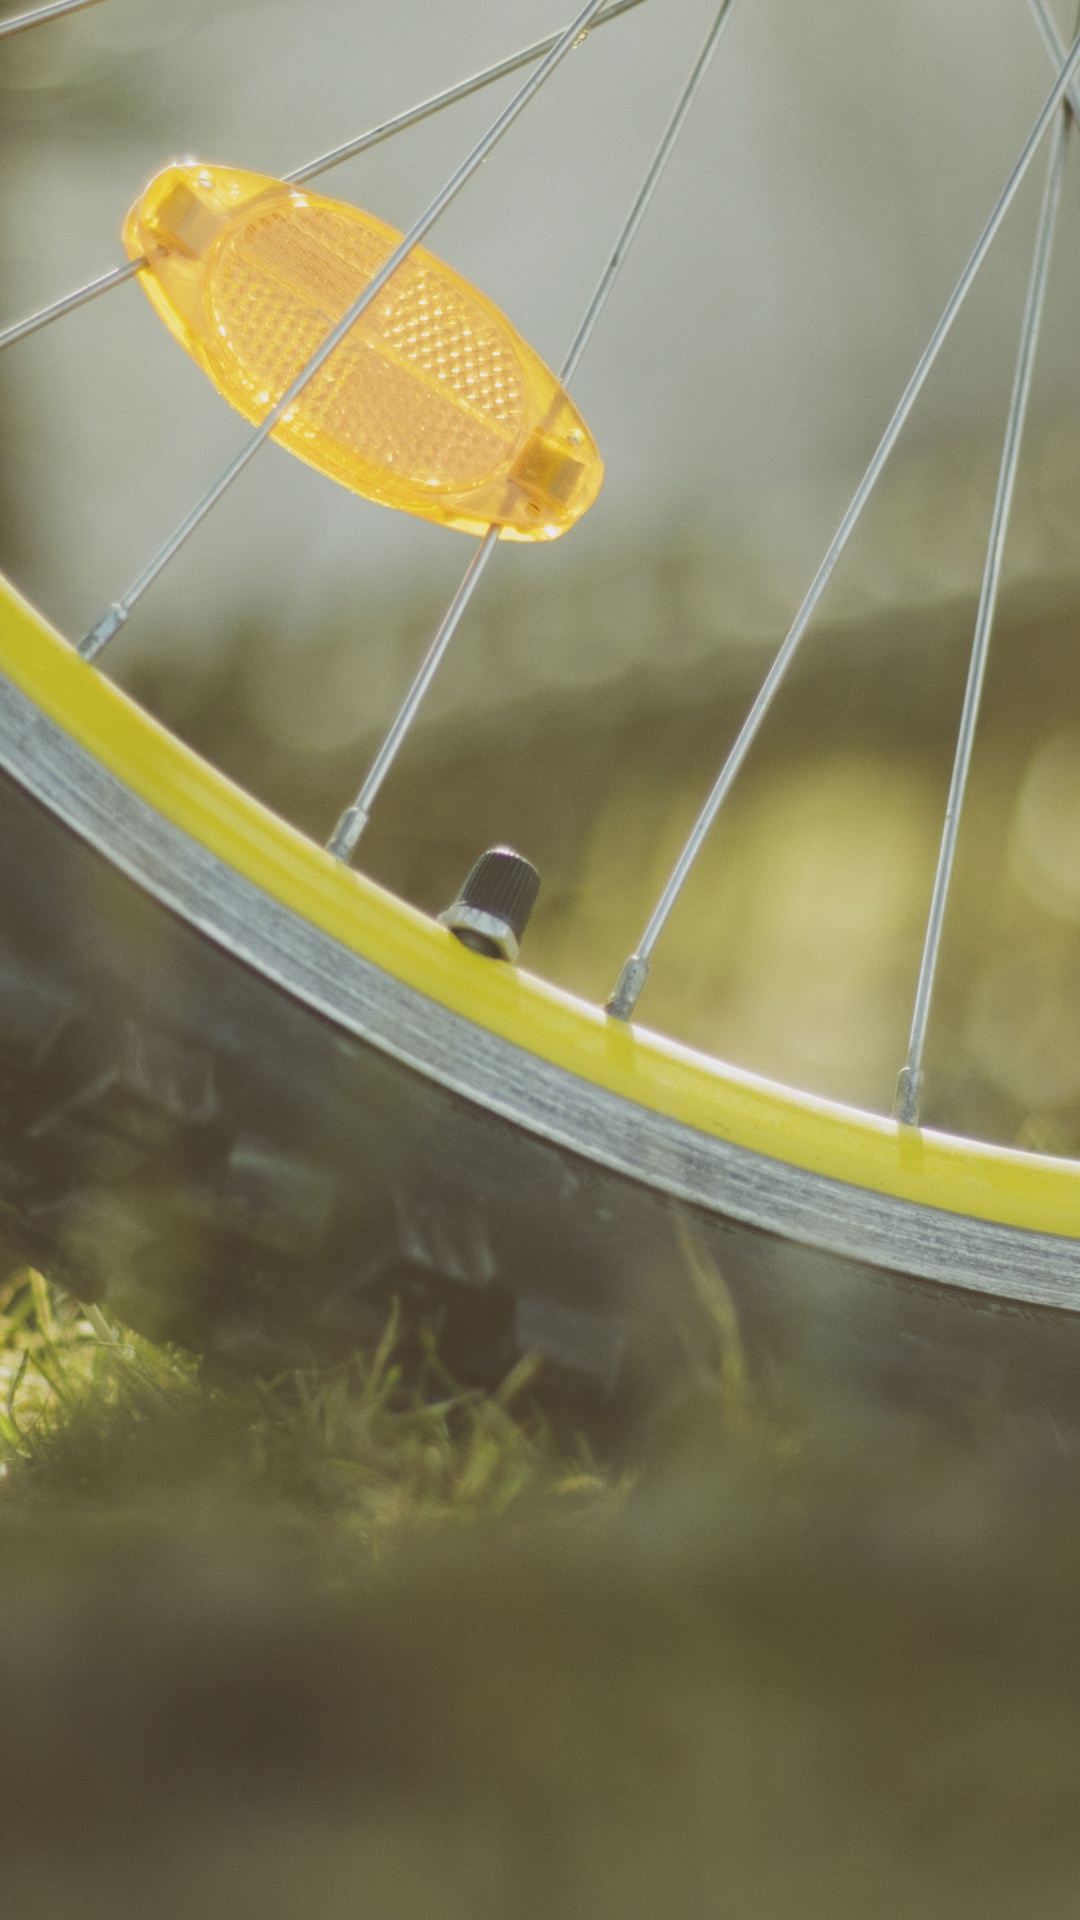 自行车, 自行车轮胎, 发言, 自行车轮, 轮胎 壁纸 1080x1920 允许